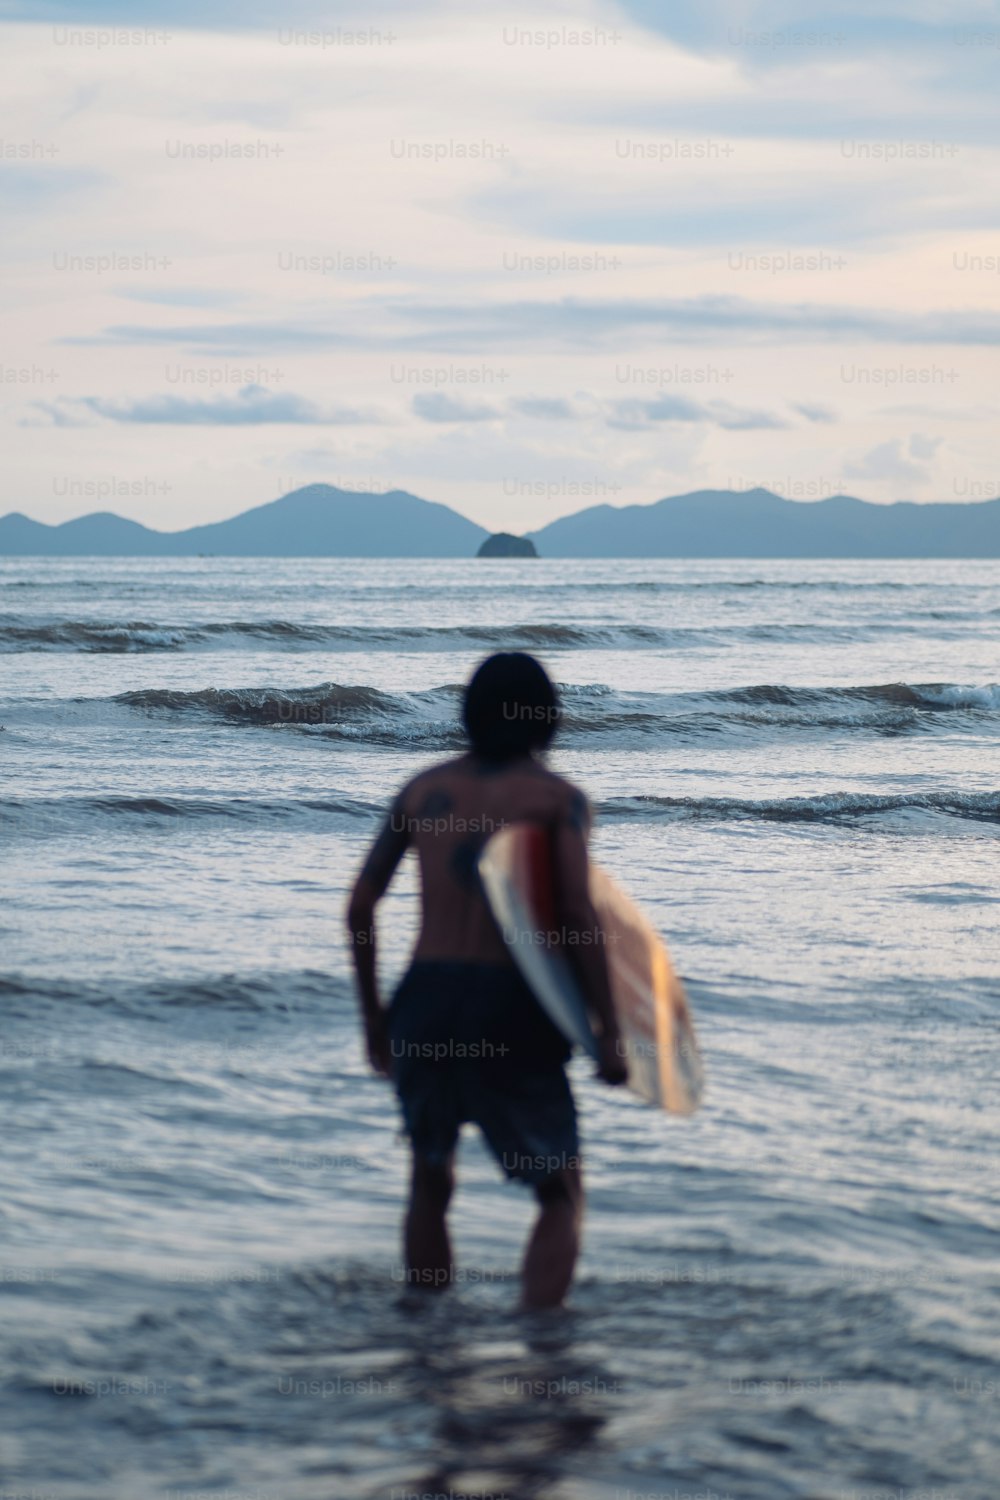 ein mann, der im meer steht und ein surfbrett hält